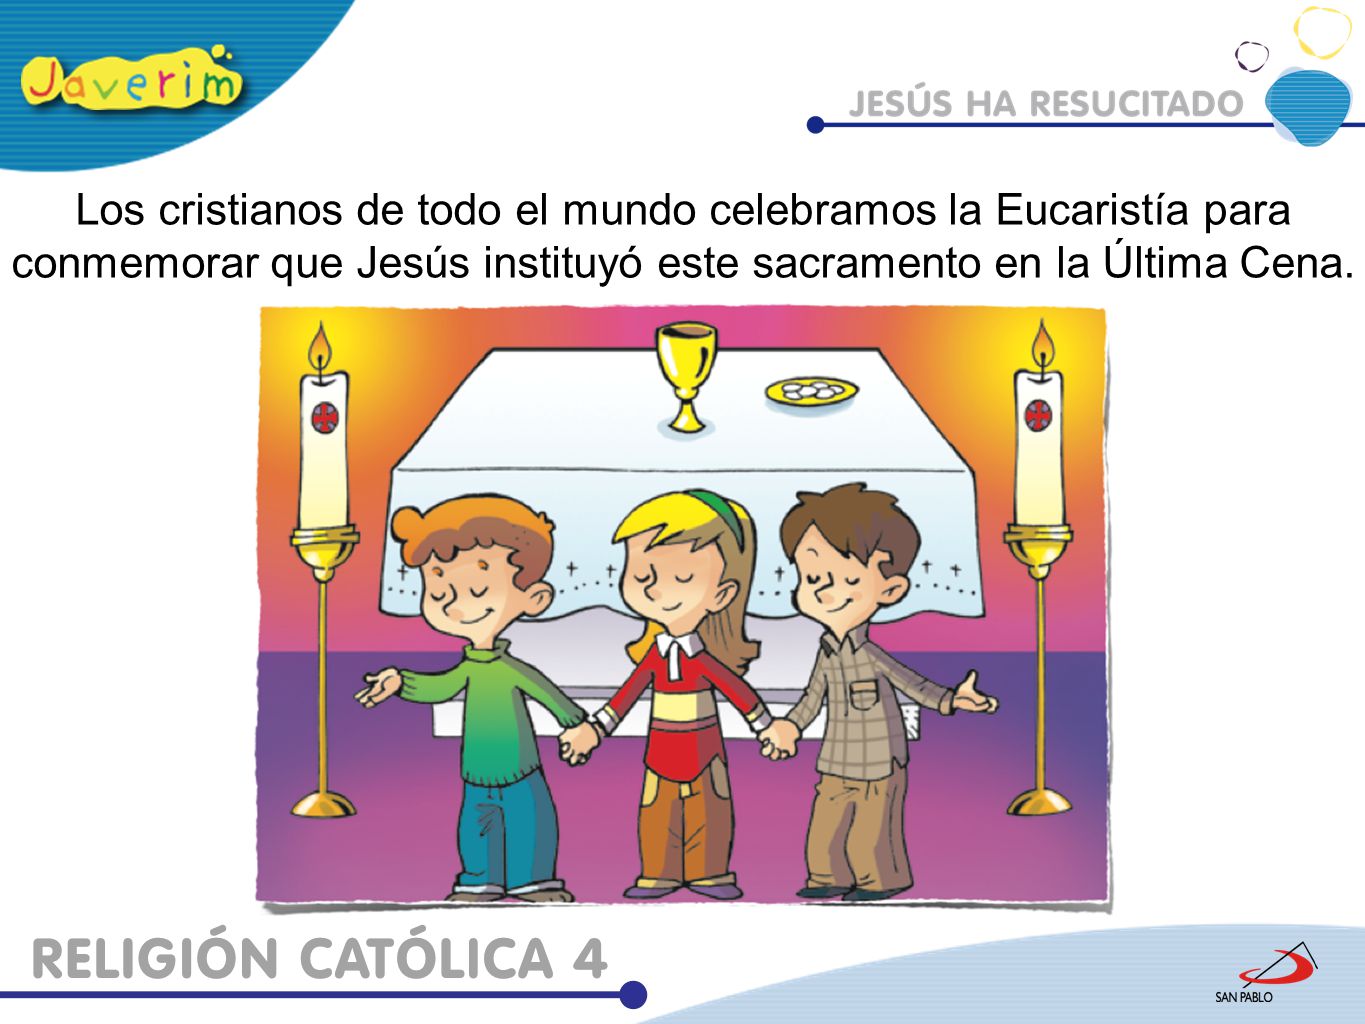 Los cristianos de todo el mundo celebramos la Eucaristía para conmemorar que Jesús instituyó este sacramento en la Última Cena.